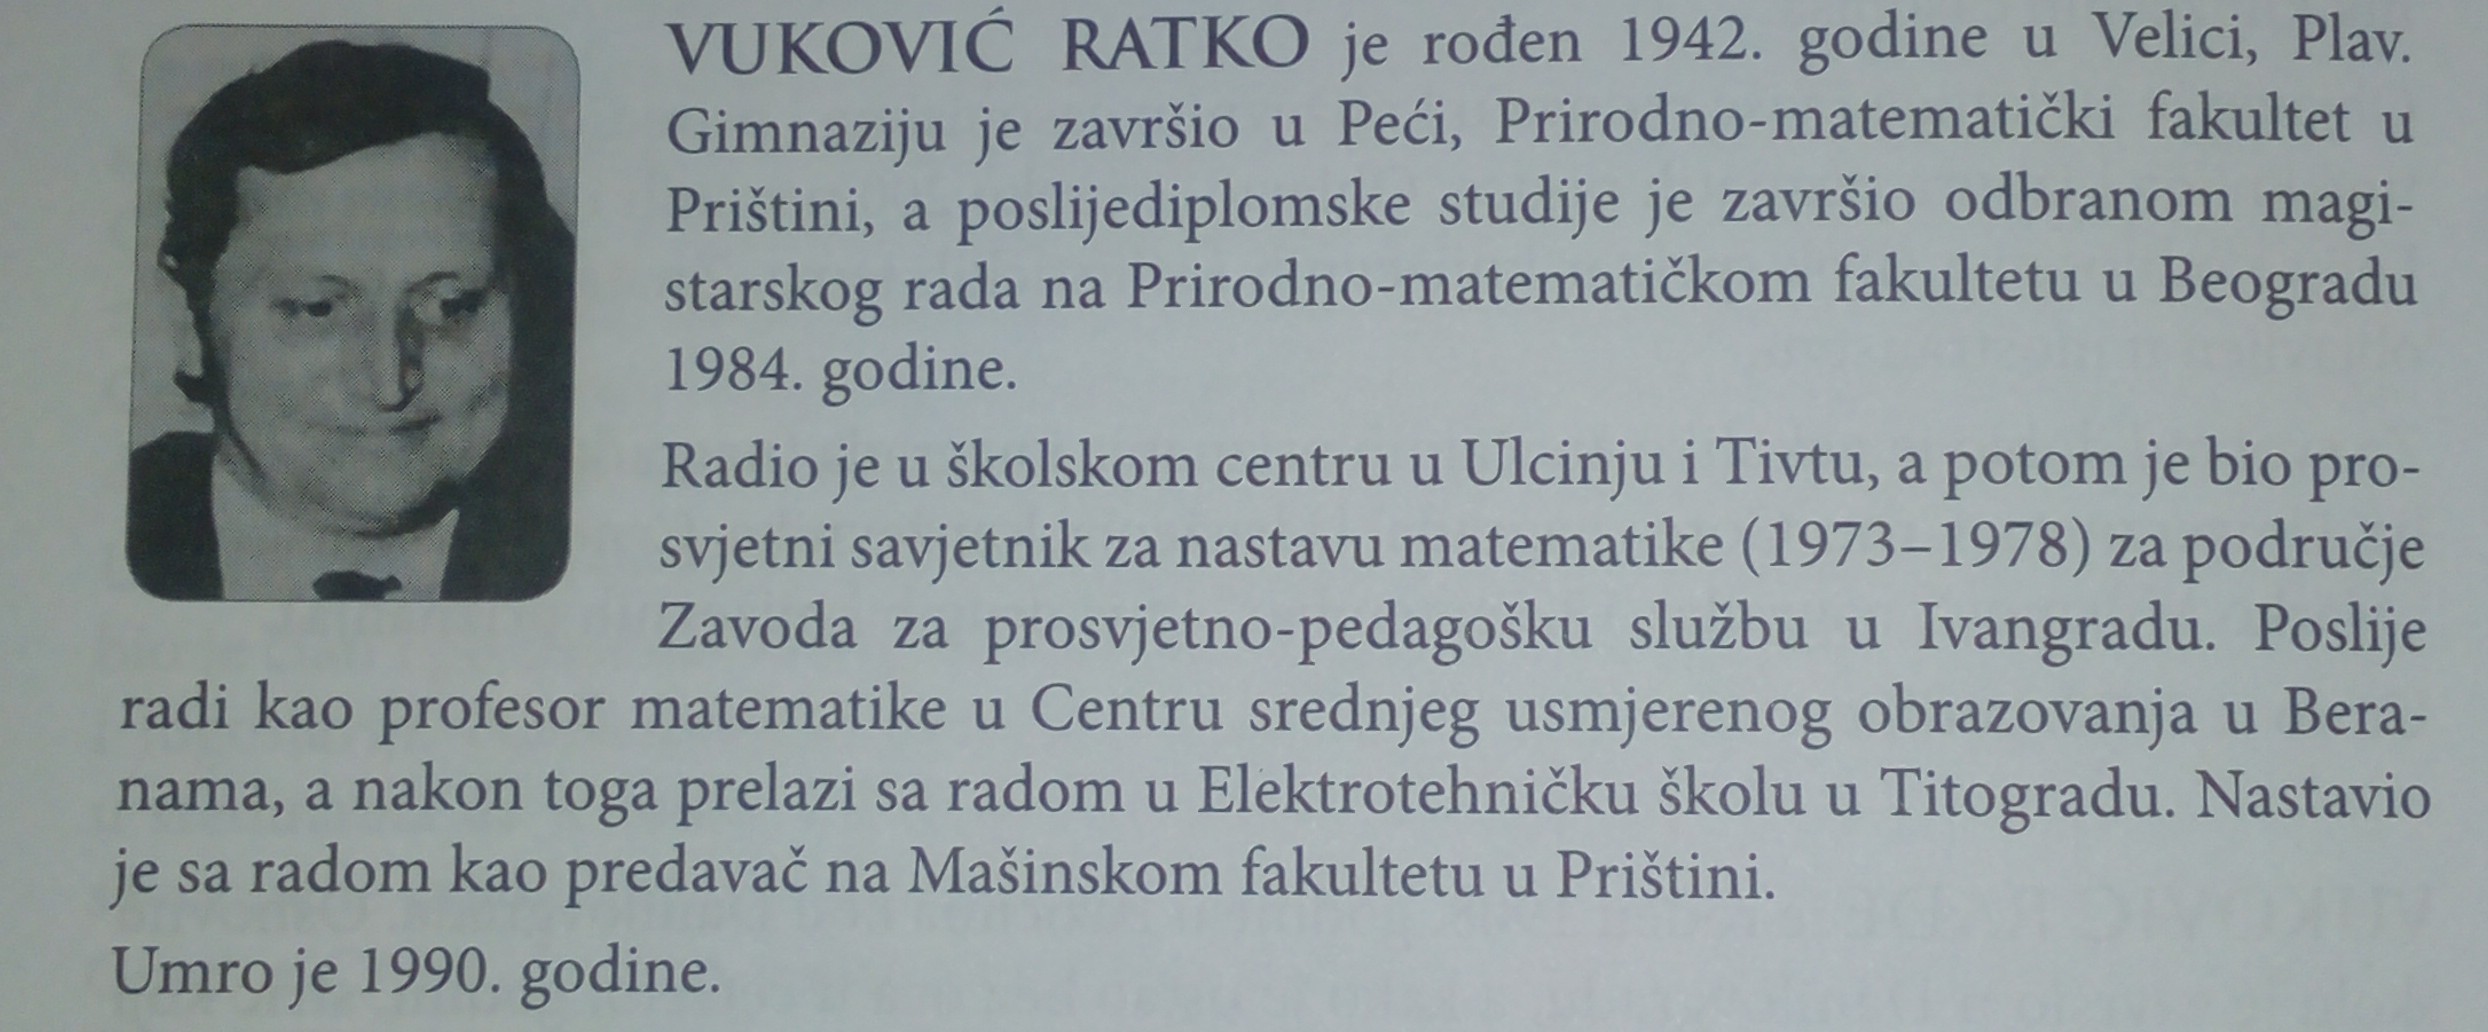 Vuković Ratko